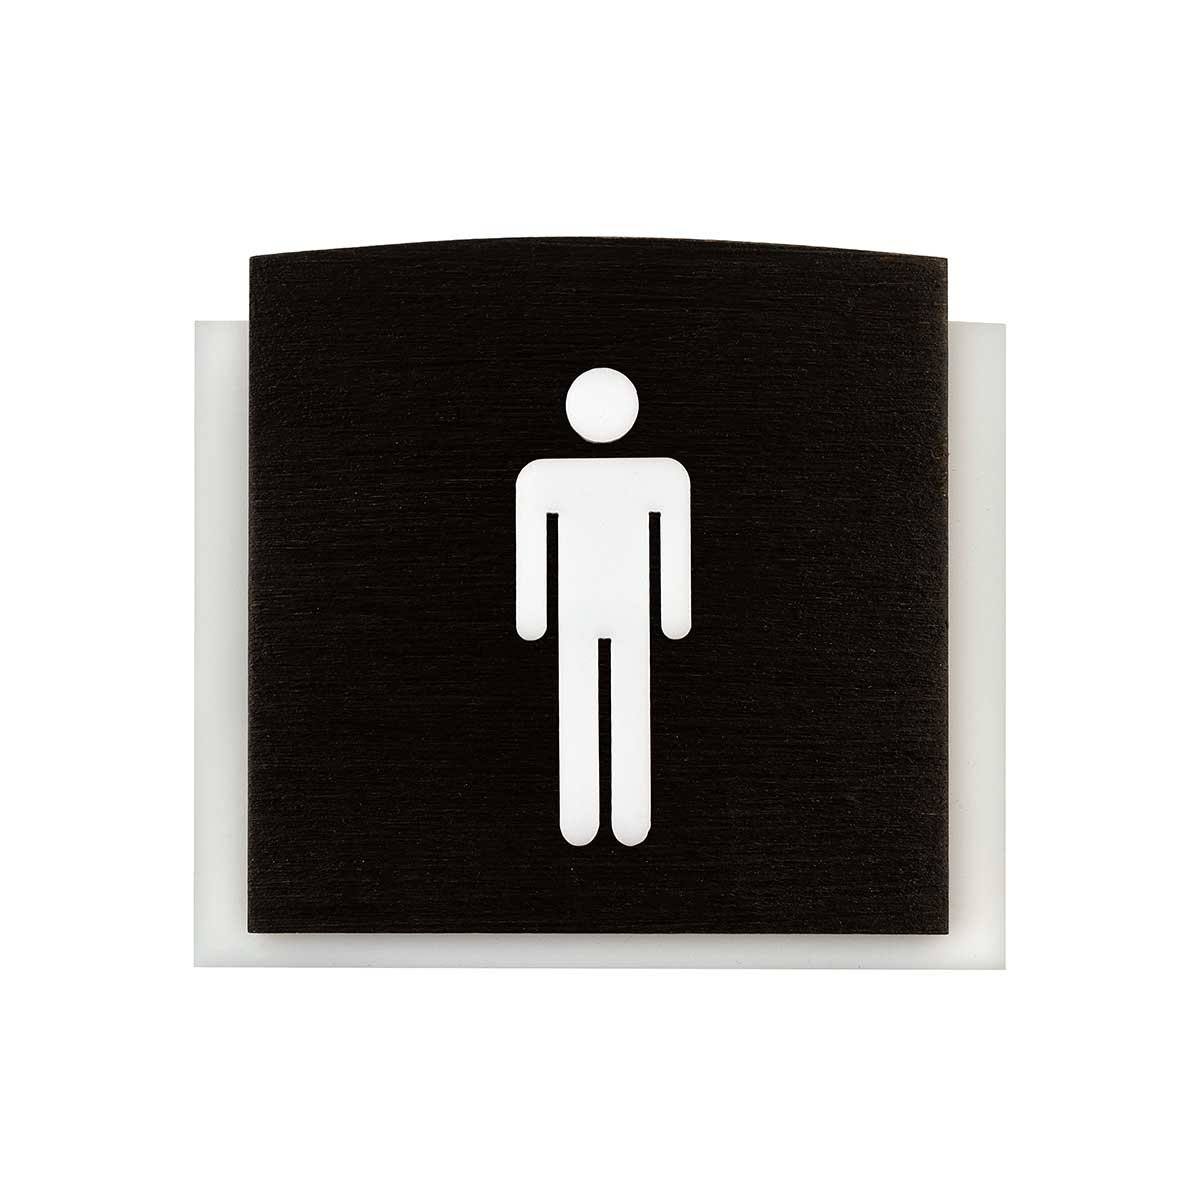 Wood Bathrooms Door Signs for Man Bathroom Signs Dark Wenge Bsign